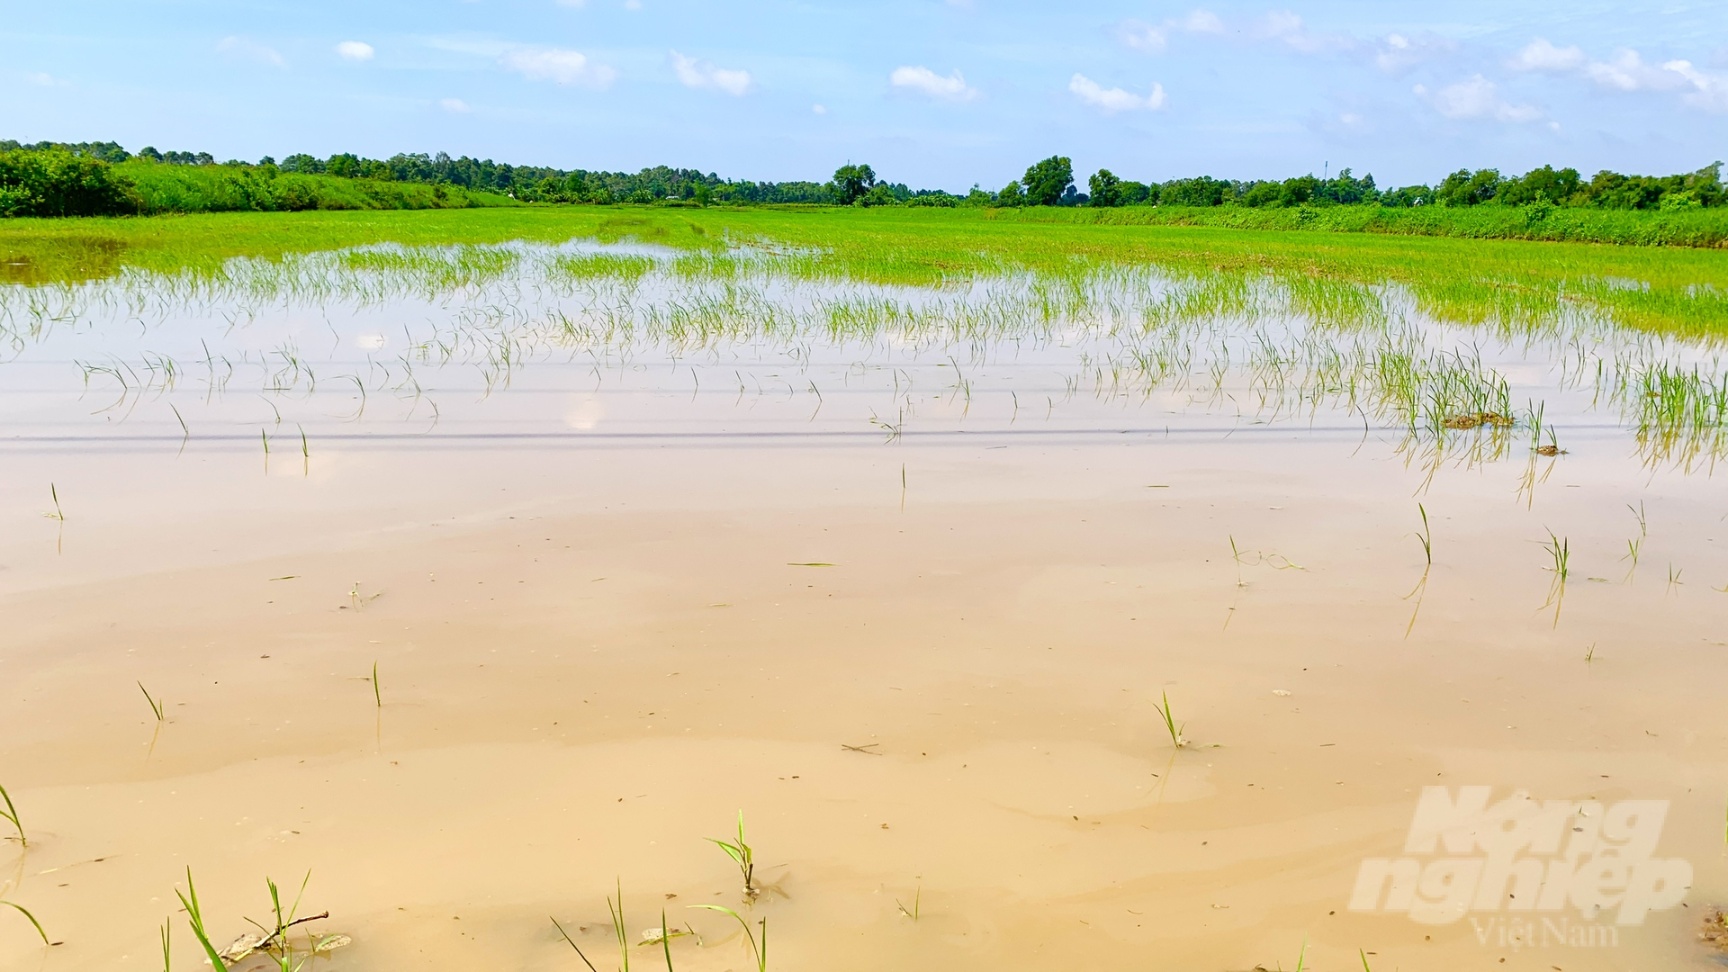 311 hecta lúa của nông dân Trà Vinh bị ngập úng do những trận mưa kéo dài nhiều ngày. Ảnh: Hồ Thảo.